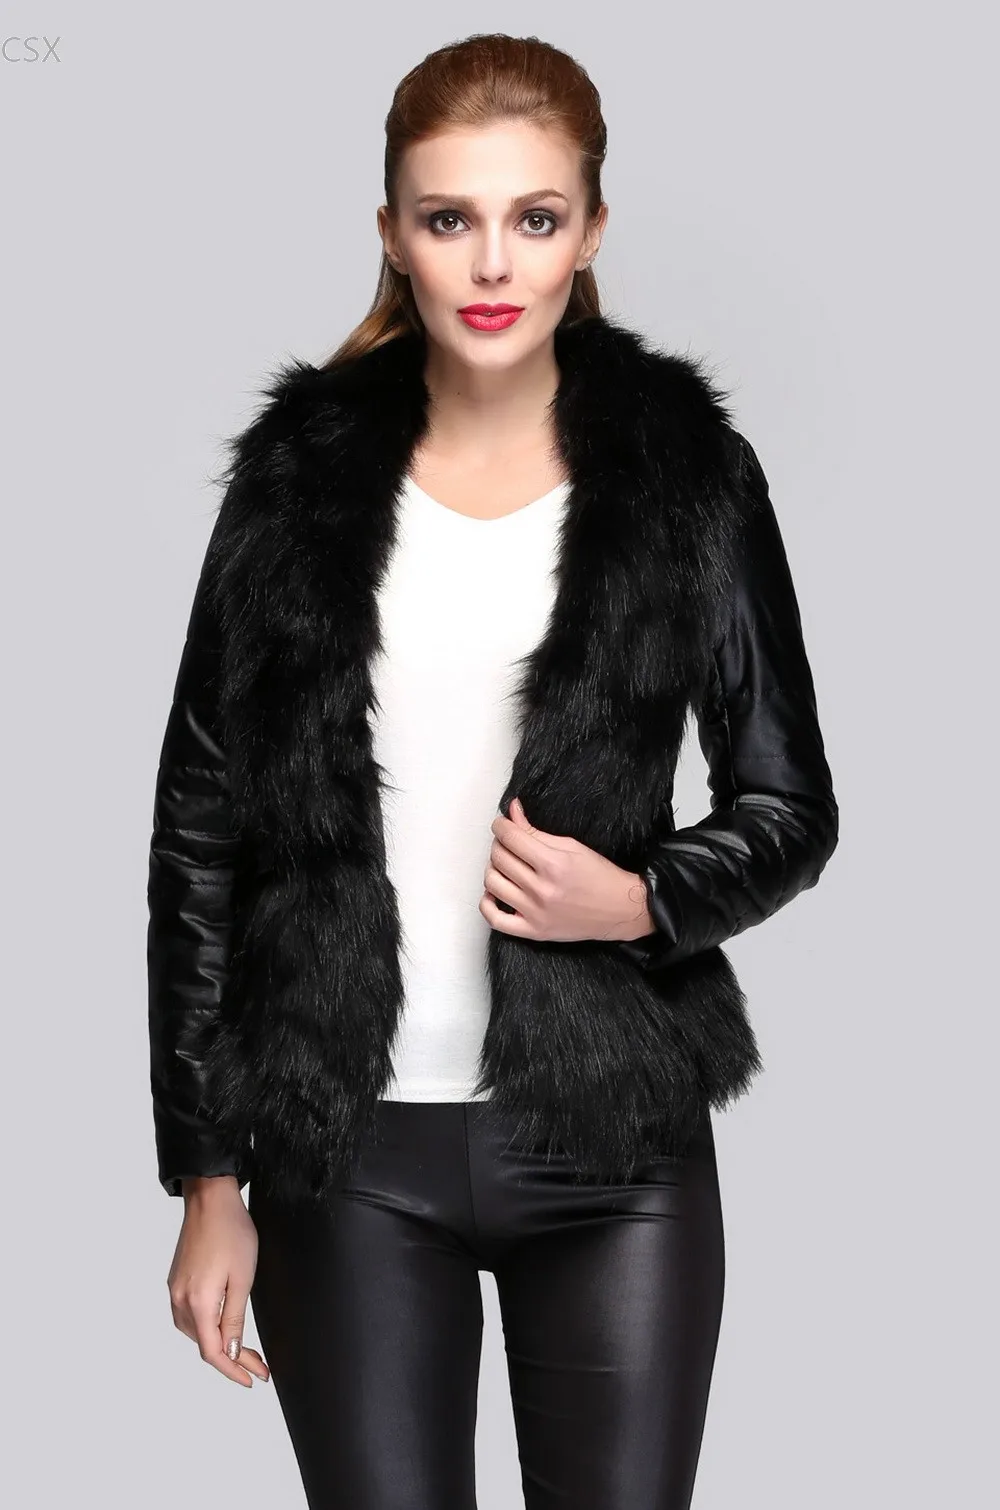 Mwoiiowm Hot Sale Luxury Women S Faux Fur Coat Leather Outerwear